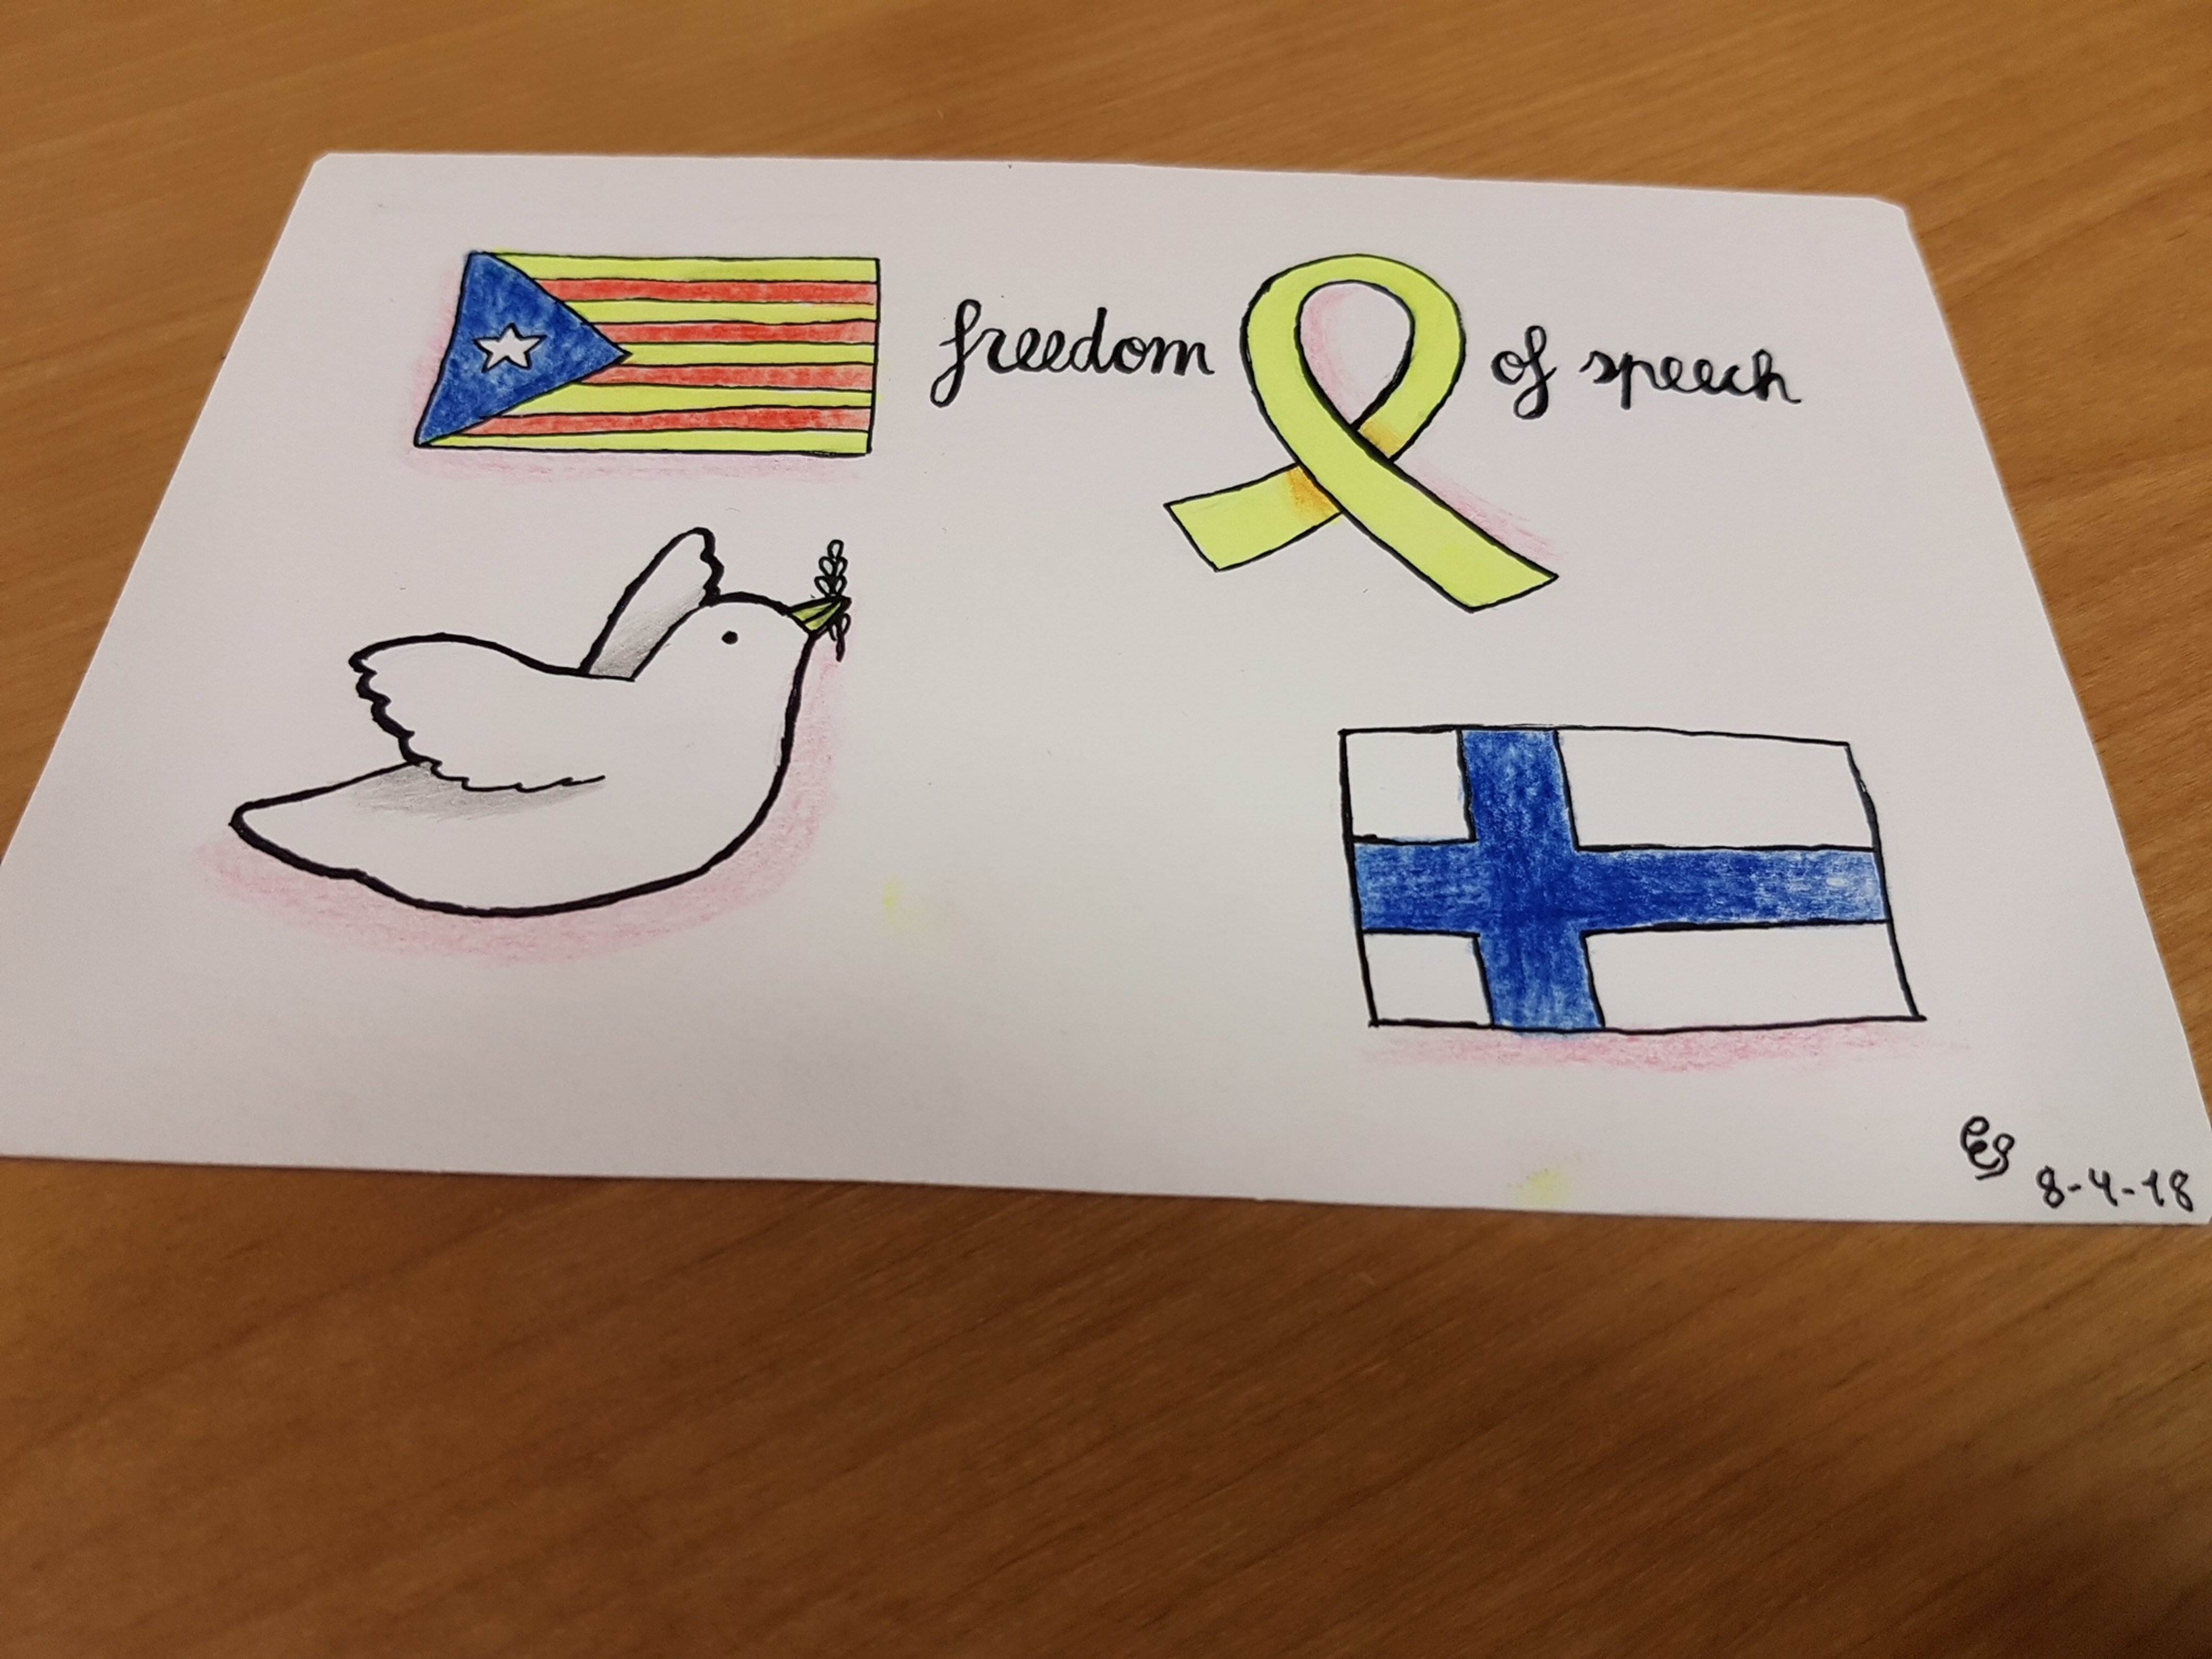 10.000 postals a Finlàndia per demanar solidaritat amb el procés català